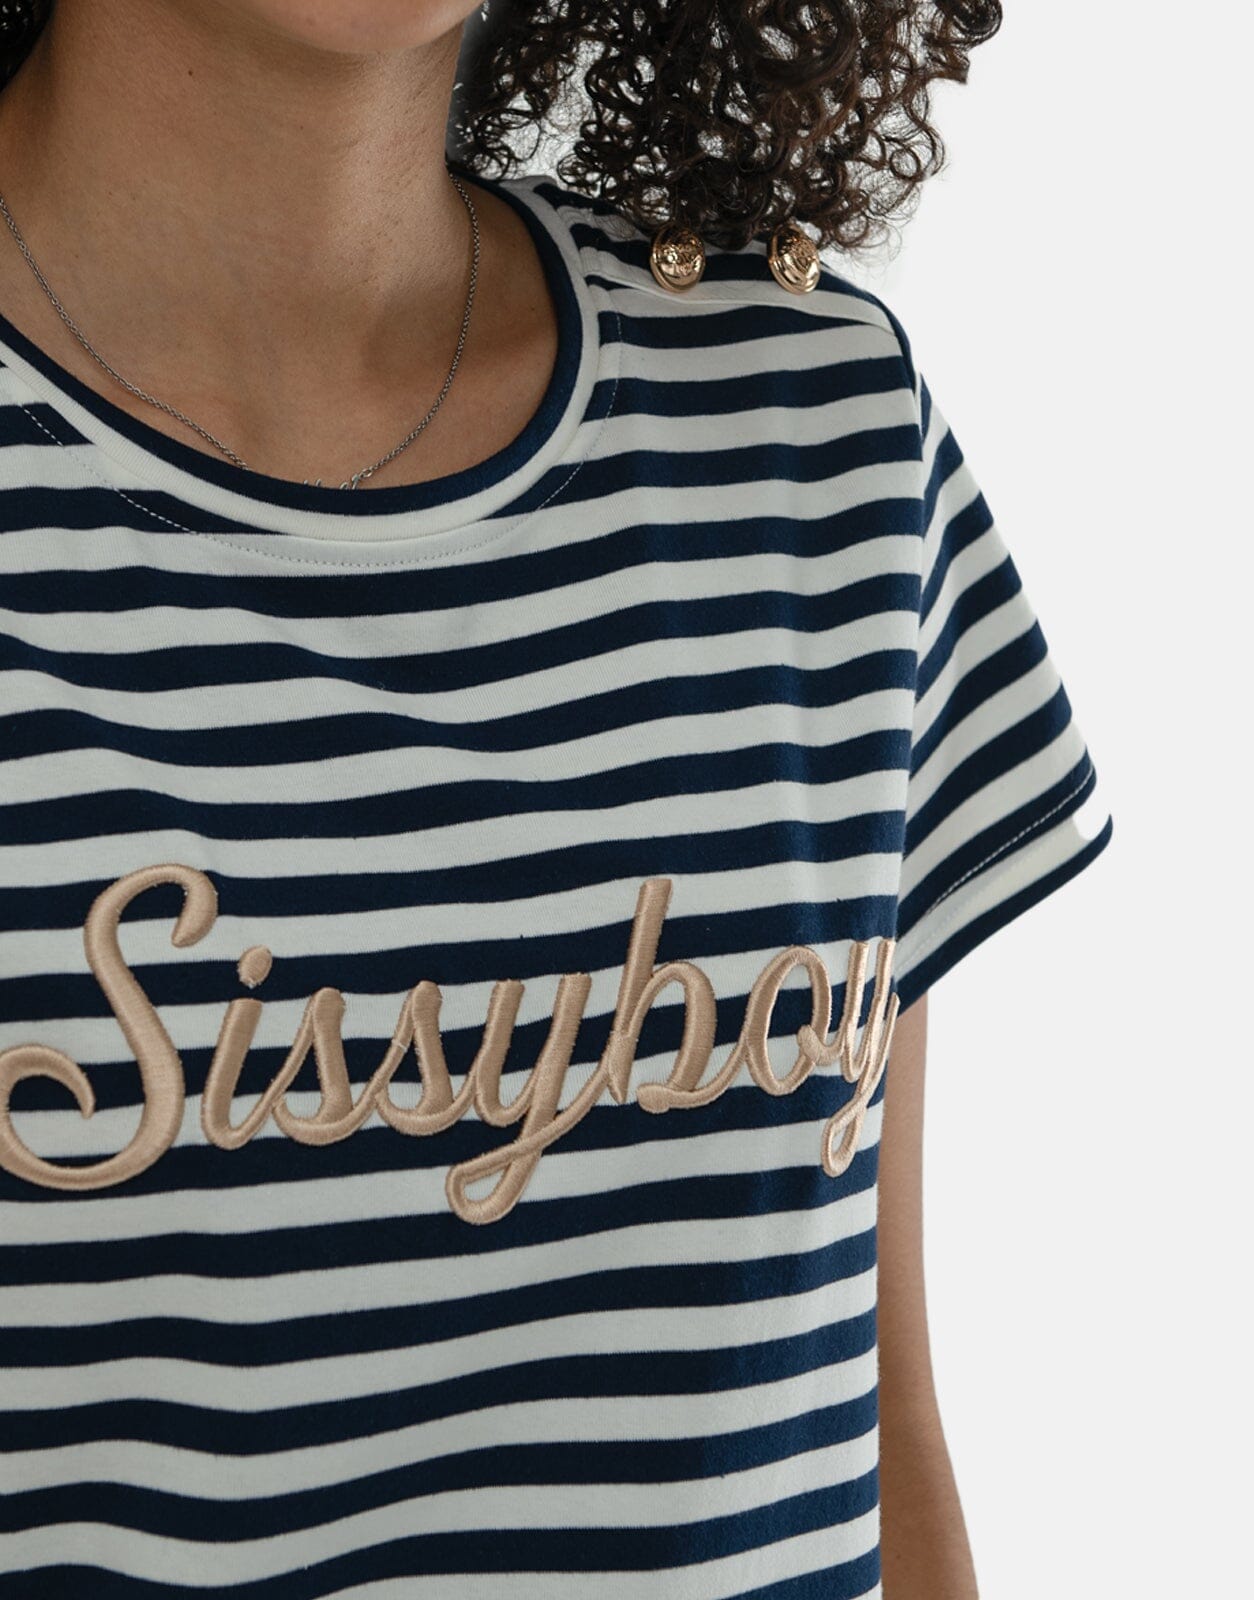 Sissy Boy Raised Embroidery T-Shirt - Subwear